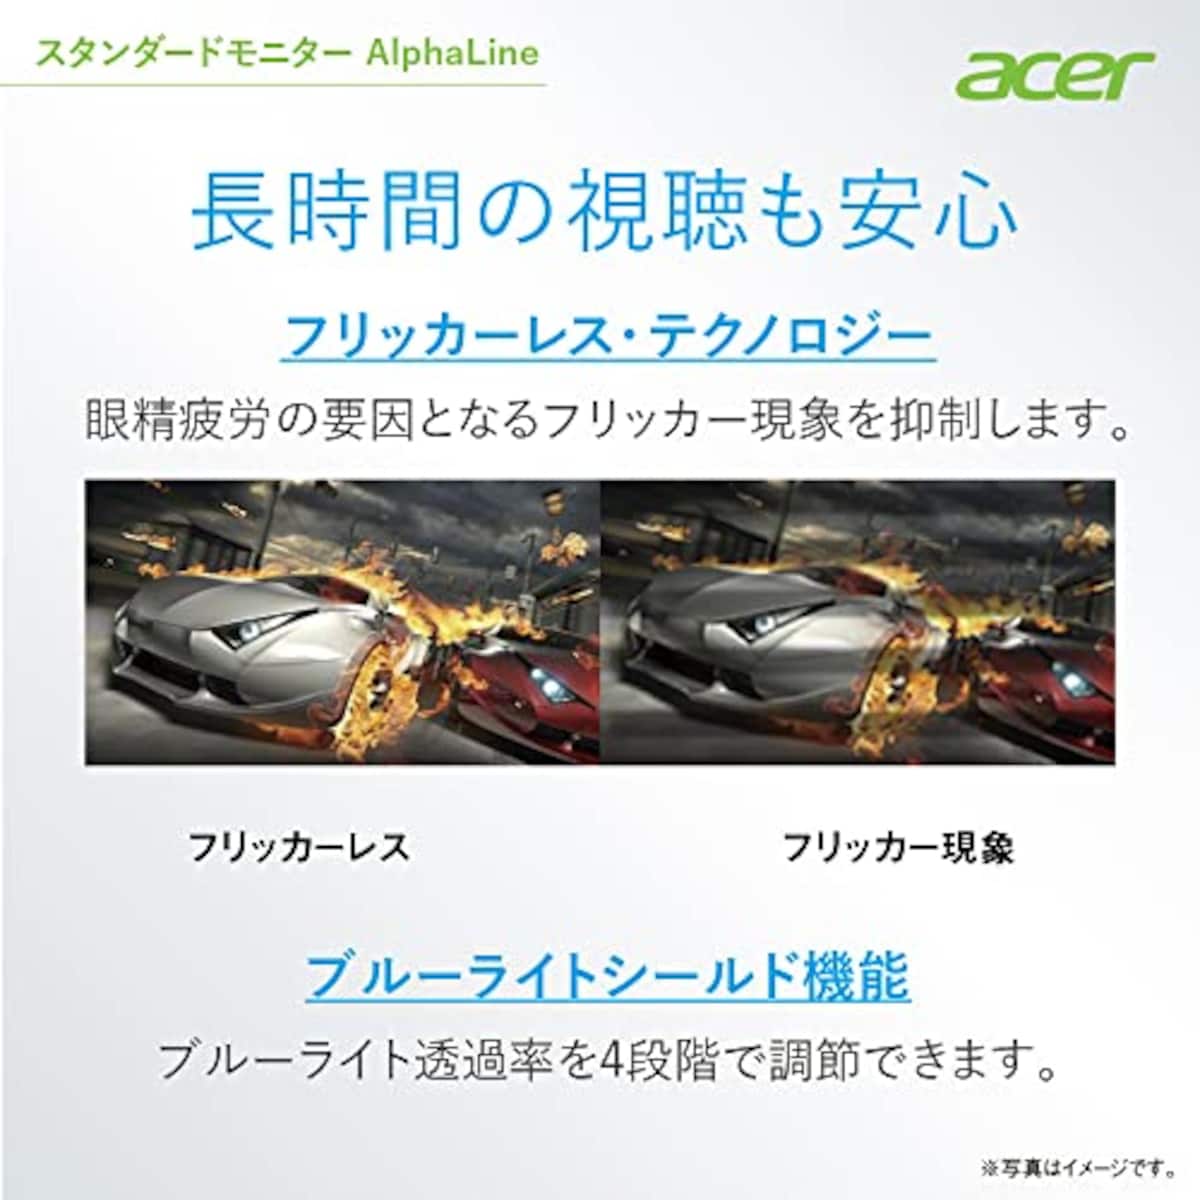  日本エイサー 【Amazon.co.jp限定】 Acer モニター AlphaLine KA272Ebmix 27インチ IPS 非光沢 フルHD 100Hz 1ms(VRB) HDMI ミニD-Sub15 VESAマウント対応 スピーカー内蔵 ヘッドホン端子 AMD FreeSync画像5 